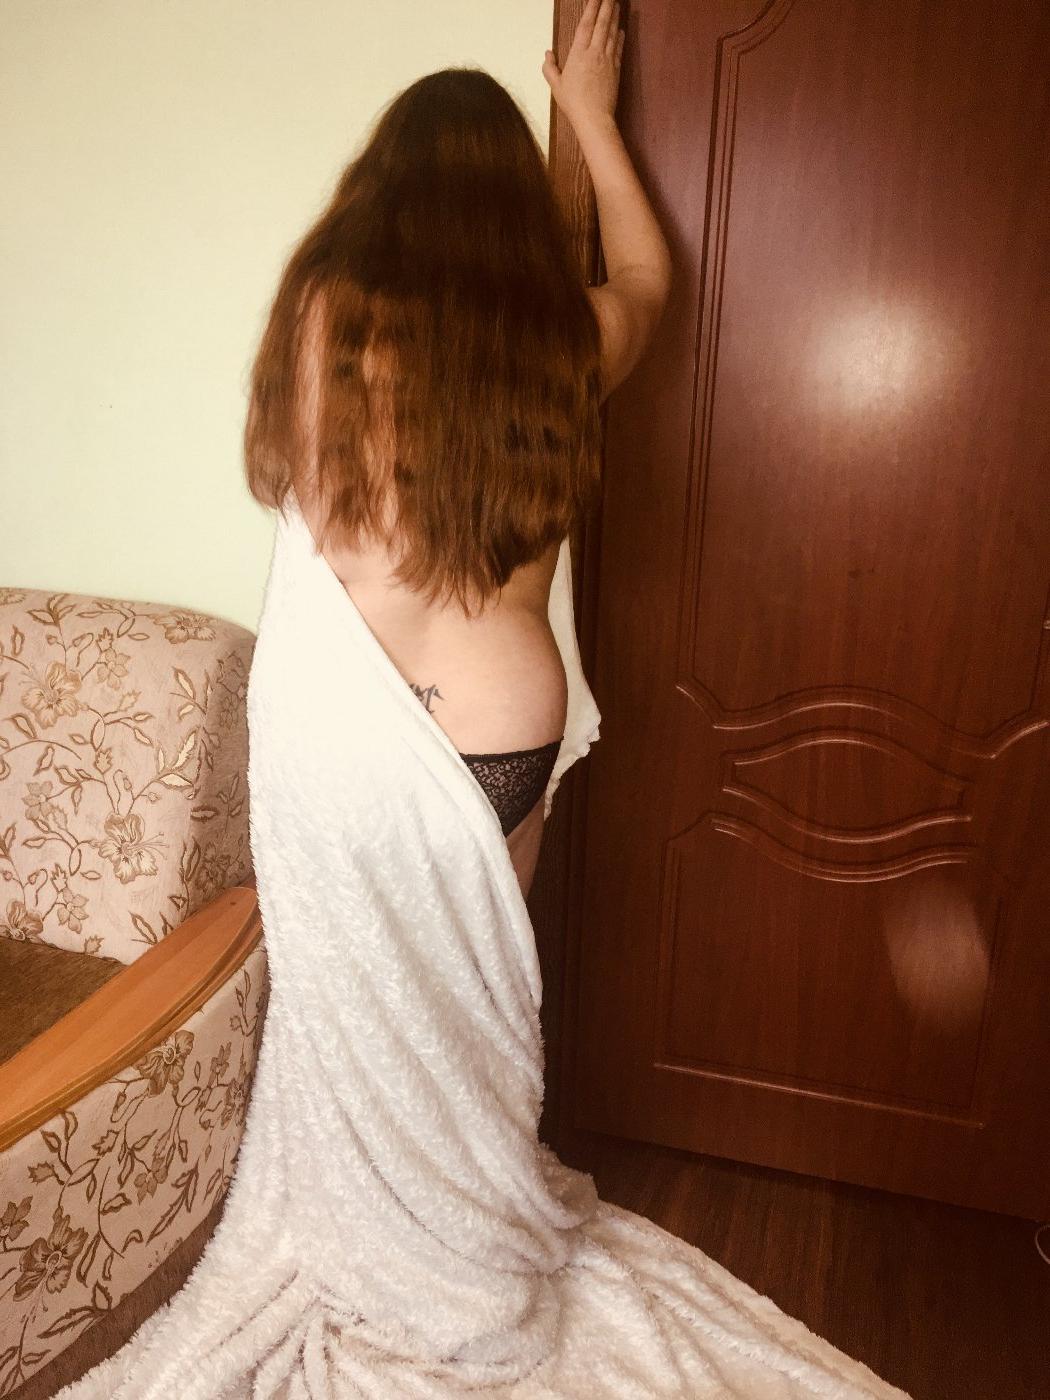 Проститутка ЛЮБУШКА, 19 лет, метро Воробьёвы горы